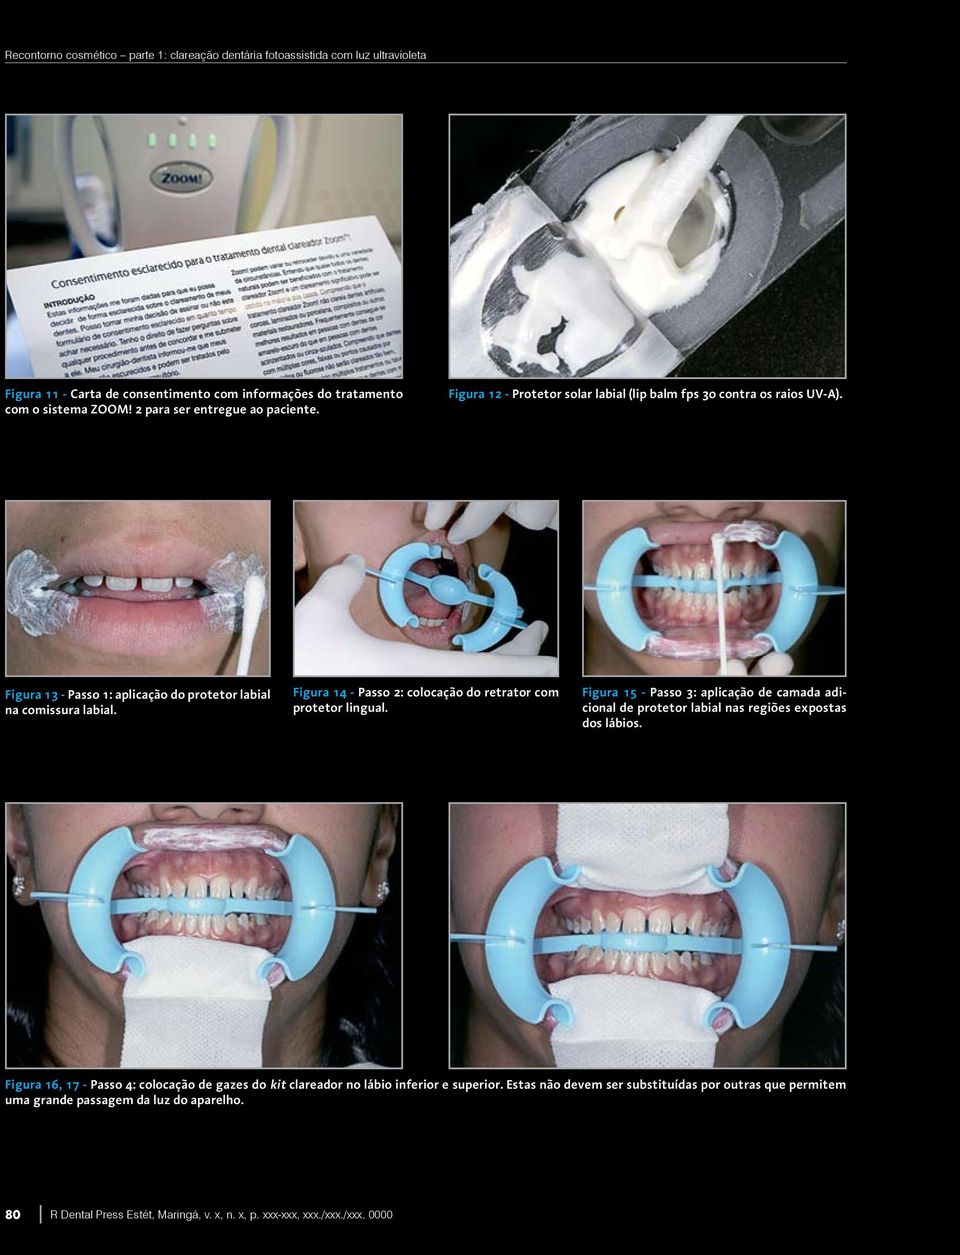 Figura 14 - Passo 2: colocação do retrator com protetor lingual. Figura 15 - Passo 3: aplicação de camada adicional de protetor labial nas regiões expostas dos lábios.